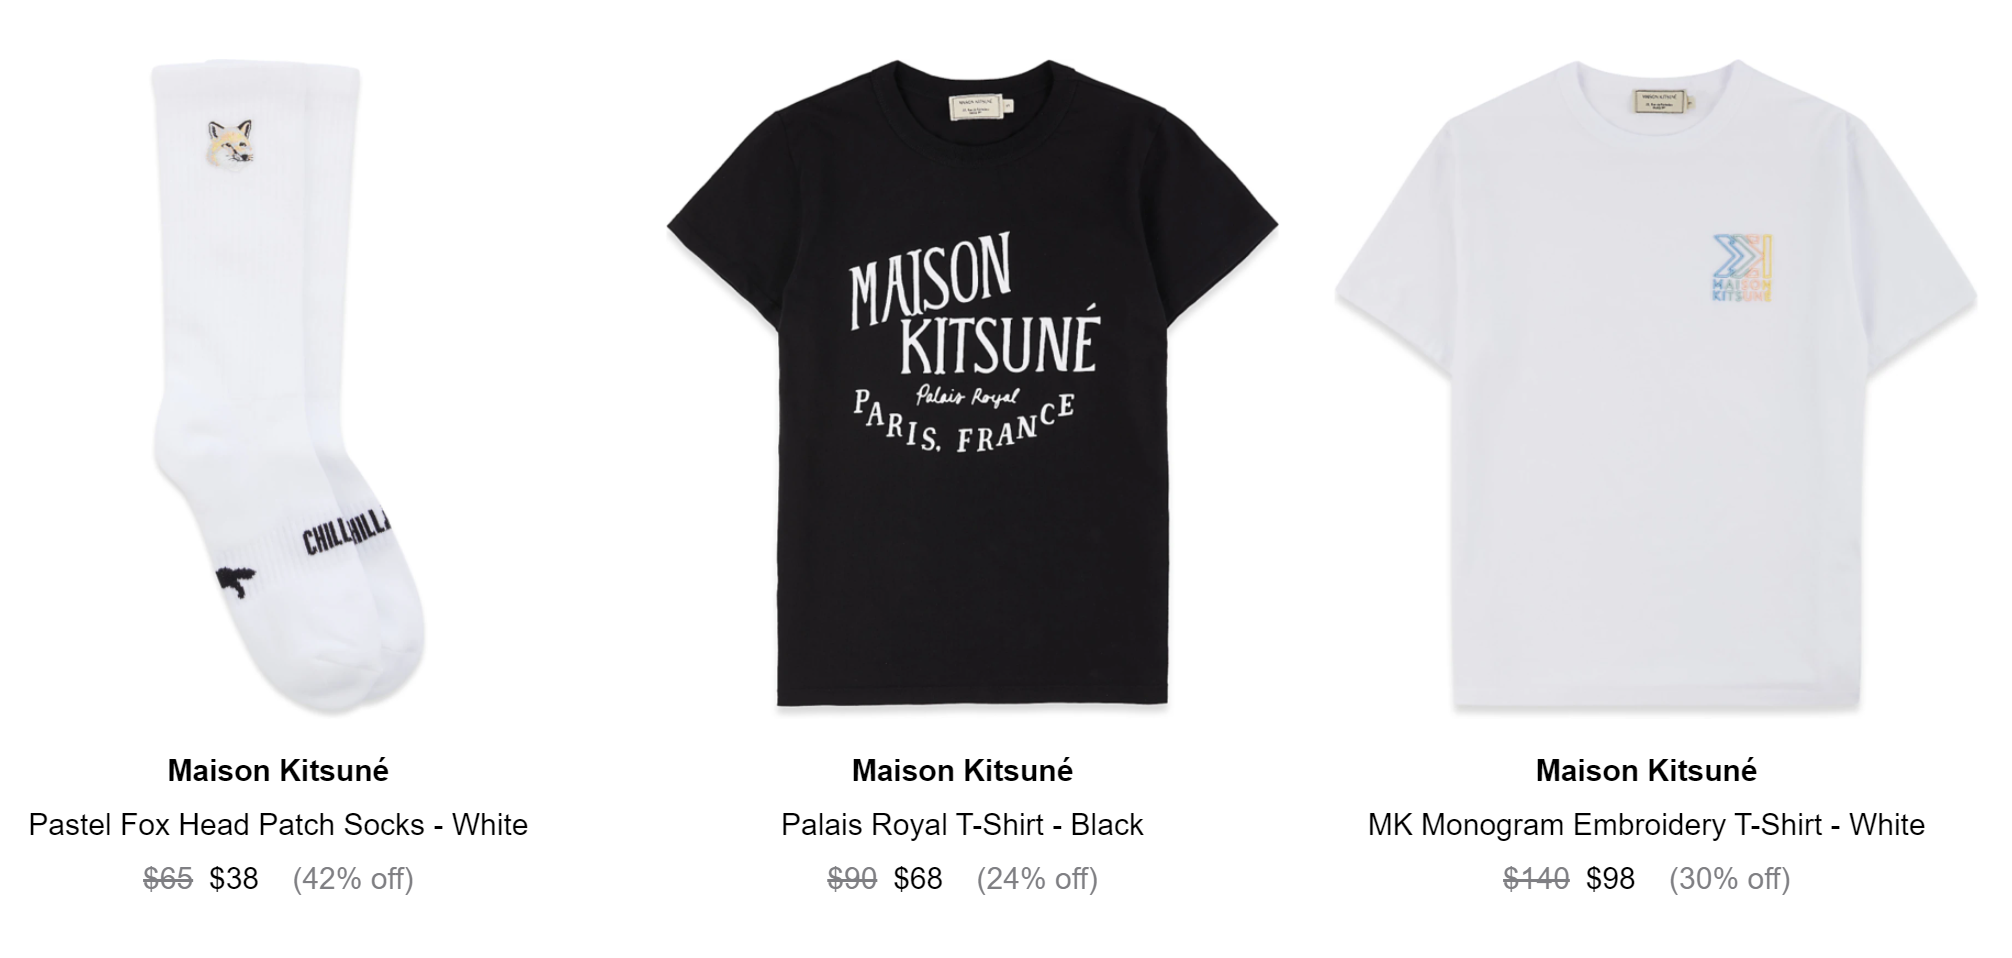 Maison Kitsune美衣5.3折起!$188收浅粉卫衣